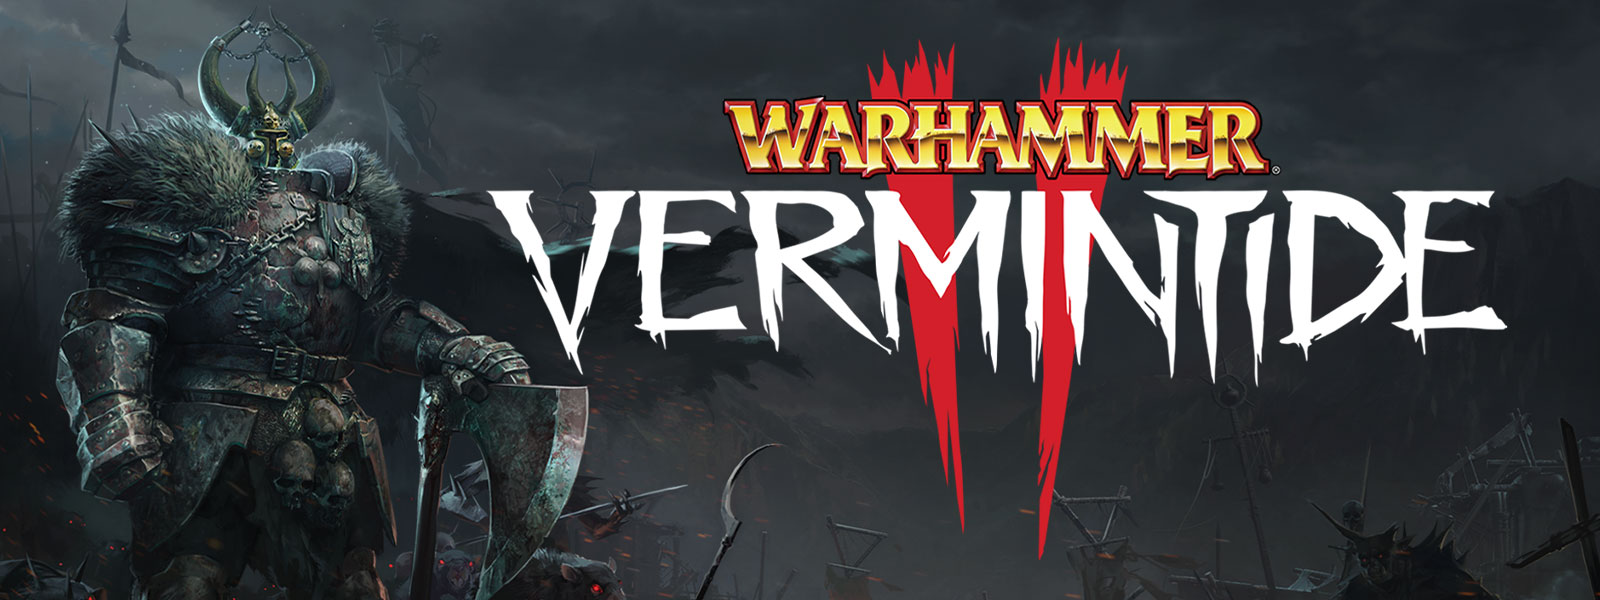 Warhammer: Vermintide 2, postava ve zbroji s kožešinovými nárameníky stojí v čele armády krys se žhnoucíma očima.